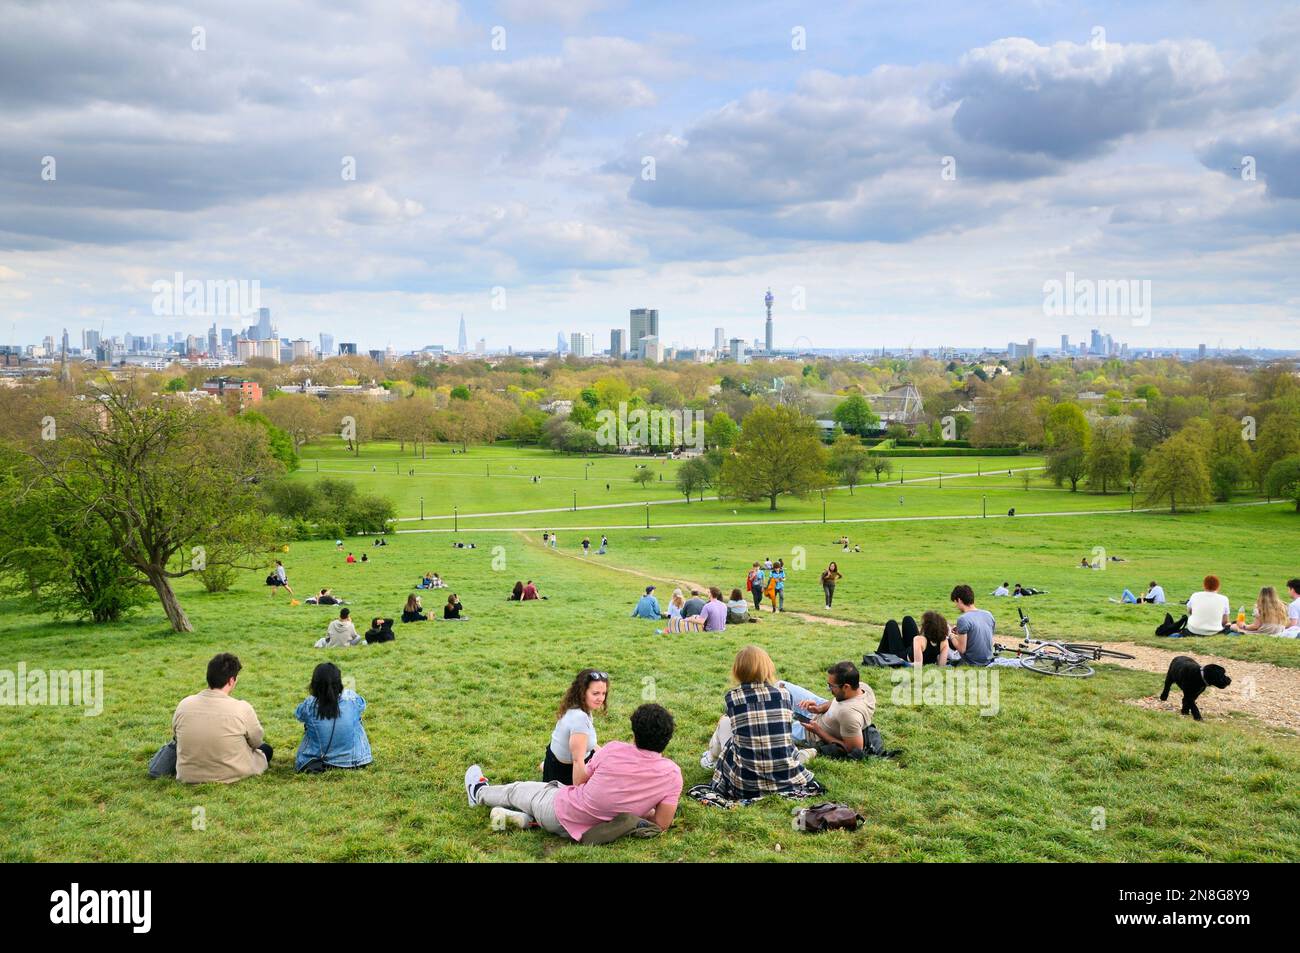 Persone che si rilassano sulle pendici erbose del parco Primrose Hill con vedute ininterrotte dei famosi edifici sullo skyline di Londra, North London England UK Foto Stock